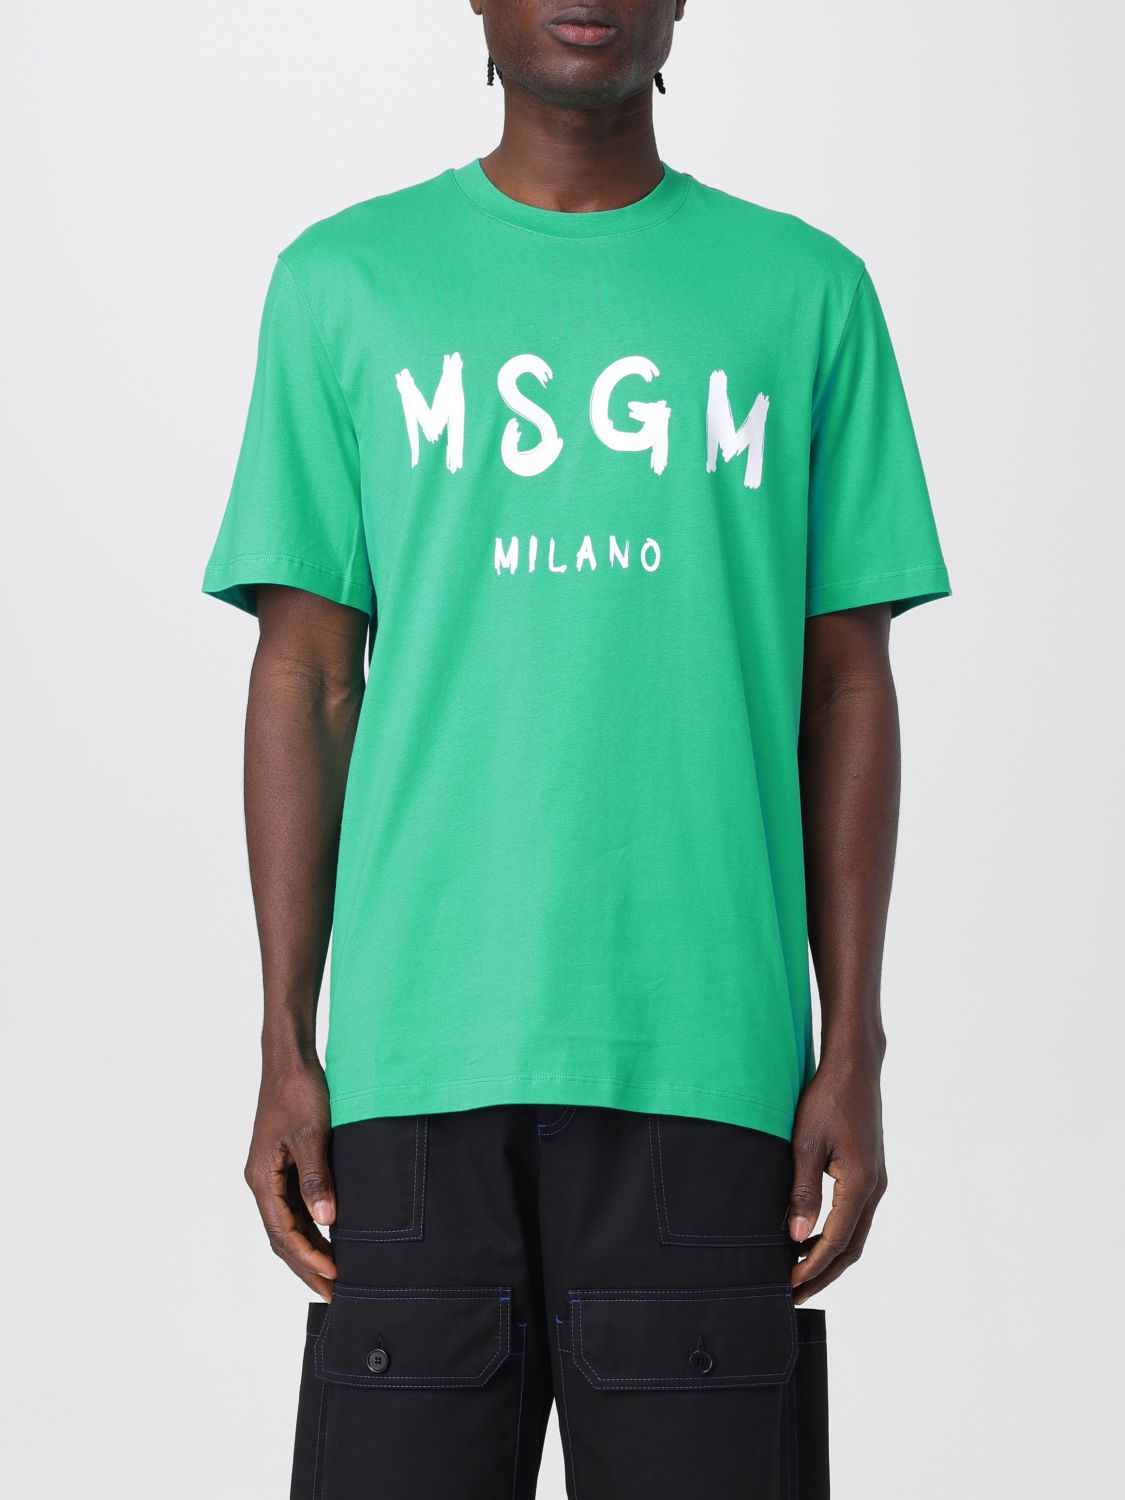 Msgm T-Shirt MSGM Men colour Green